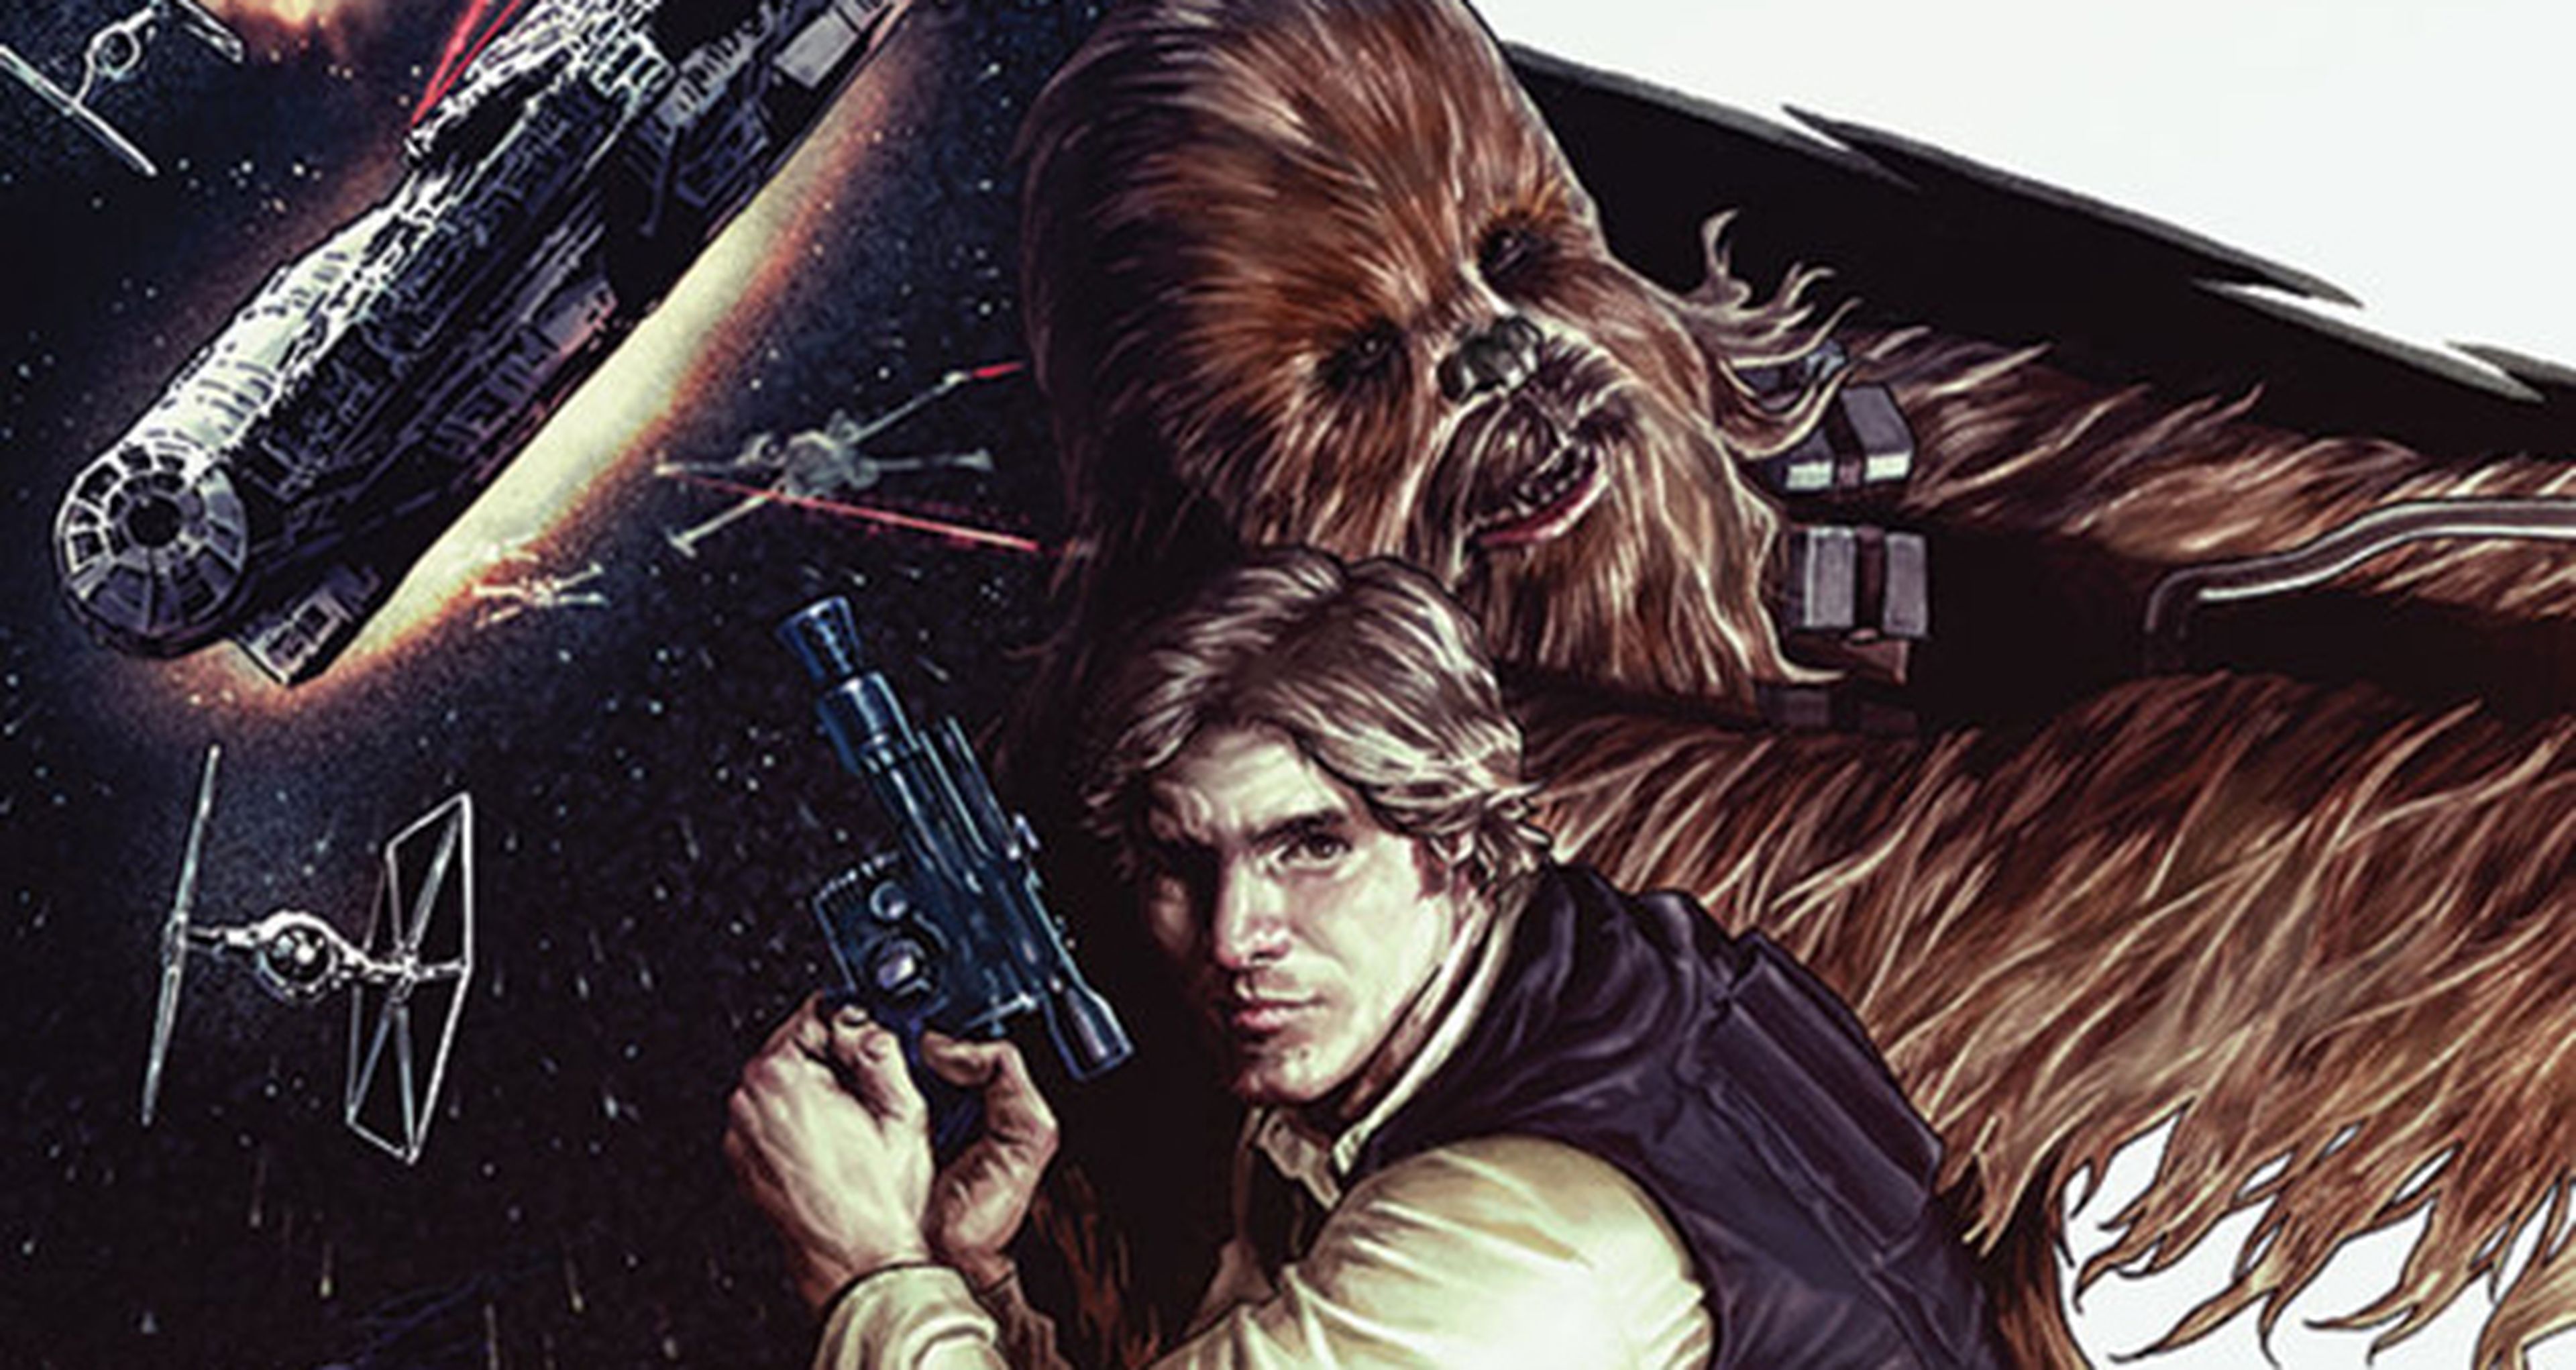 Star Wars - Marvel anuncia nueva colección de Han Solo